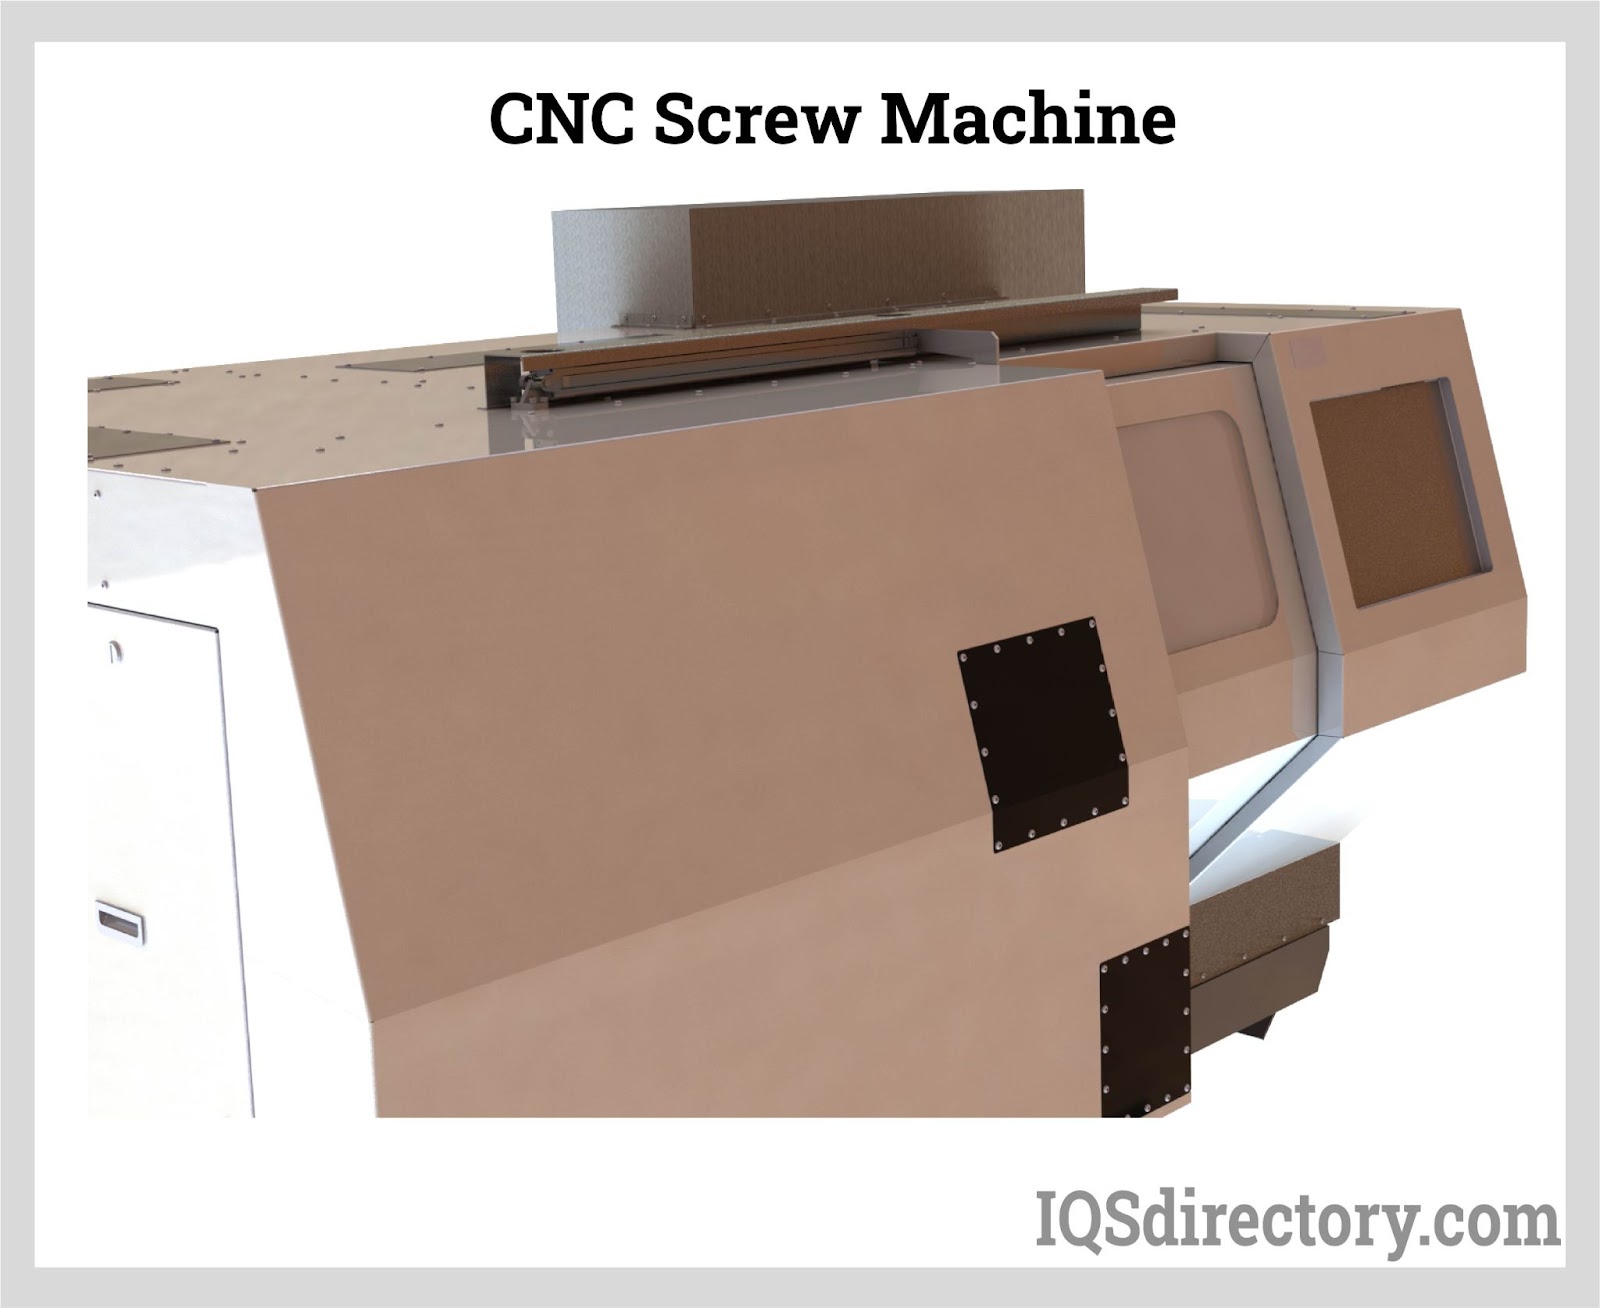 CNC Screw Machine